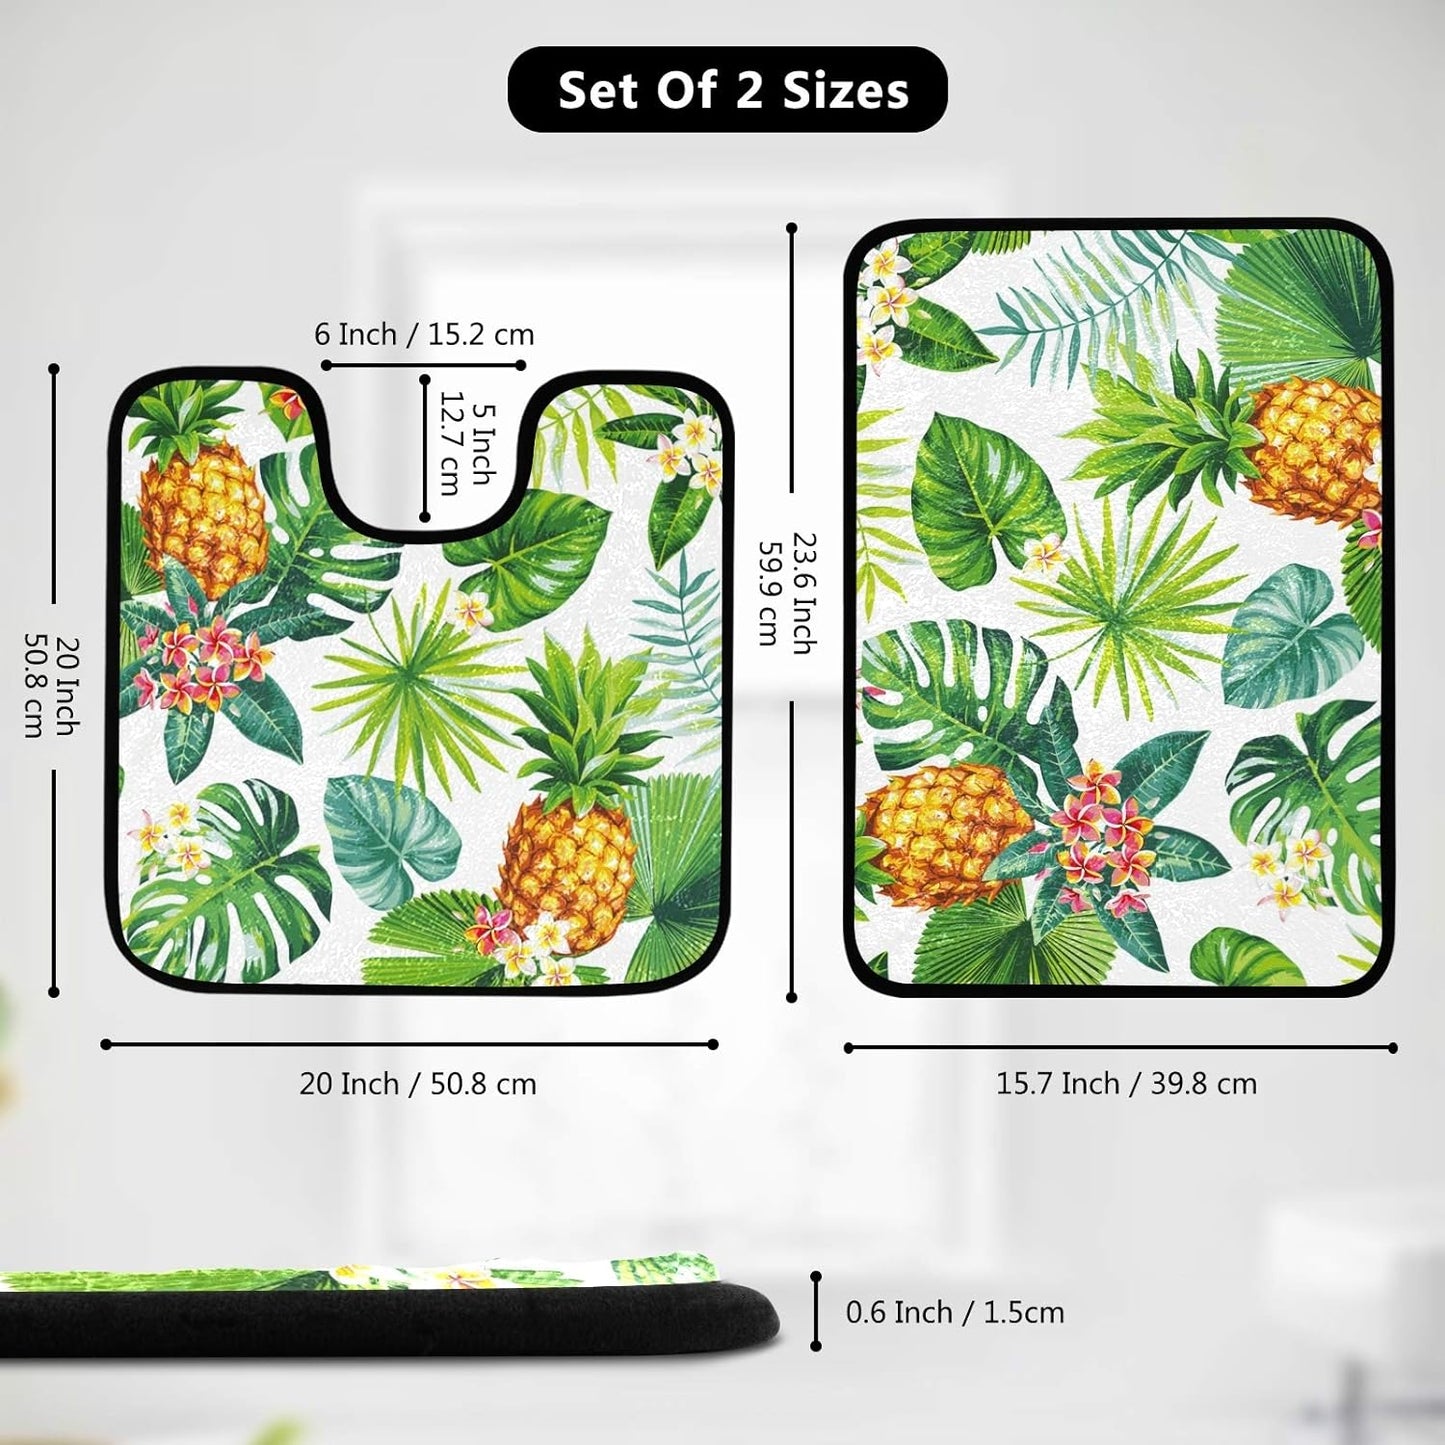 Pineapple Palm Leaf Bathroom Floor Mat 2-Piece Set